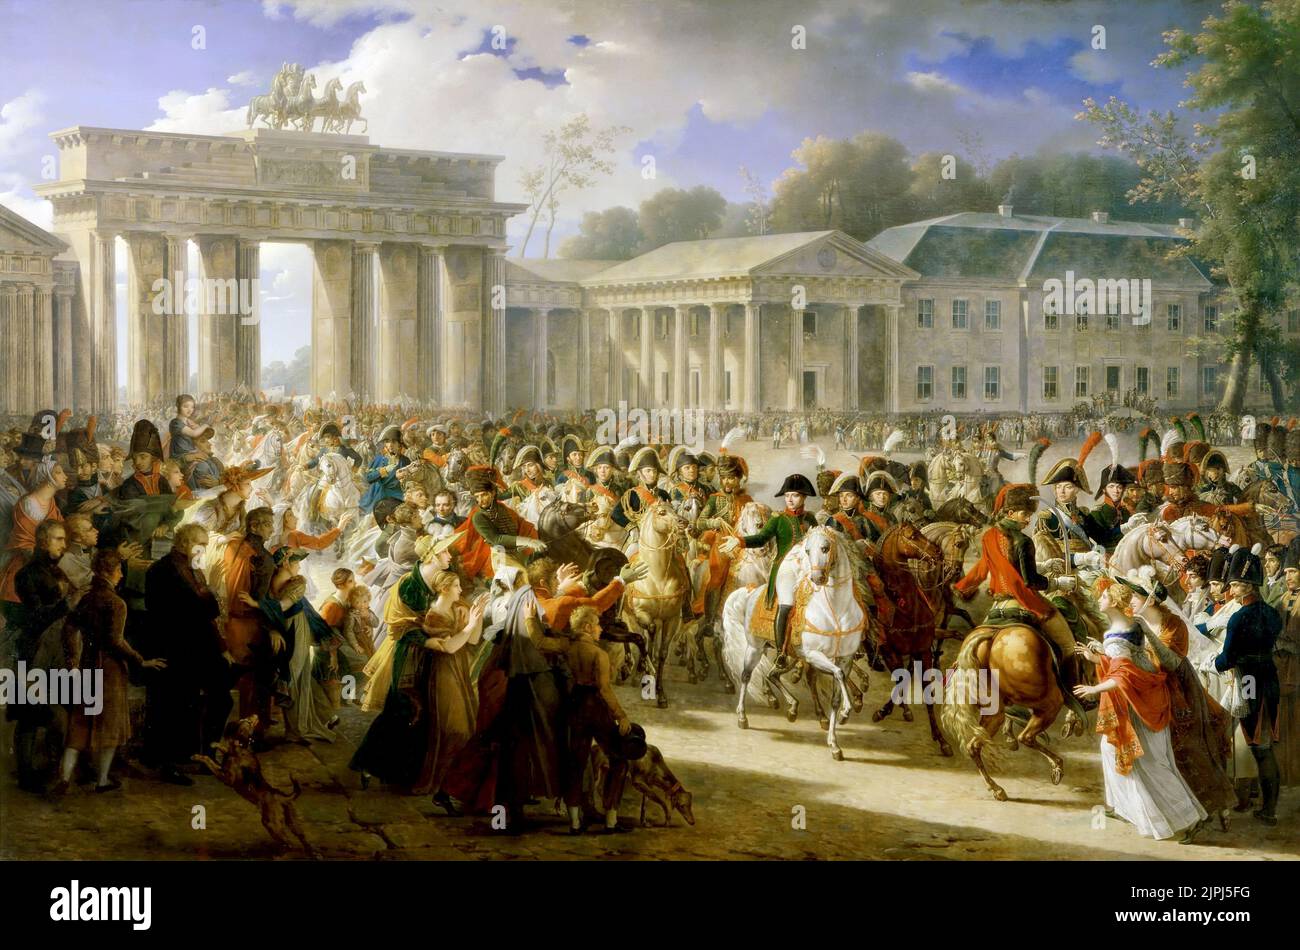 Nach dem Sieg über preußische Truppen in Jena trat die französische Armee am 27. Oktober 1806 in Berlin ein. Charles Meynier Napoleon durchläuft nach der Schlacht bei Jena-Auerstedt (1806) das Brandenburger Tor. Gemalt von Charles Meynier im Jahre 1810. Stockfoto